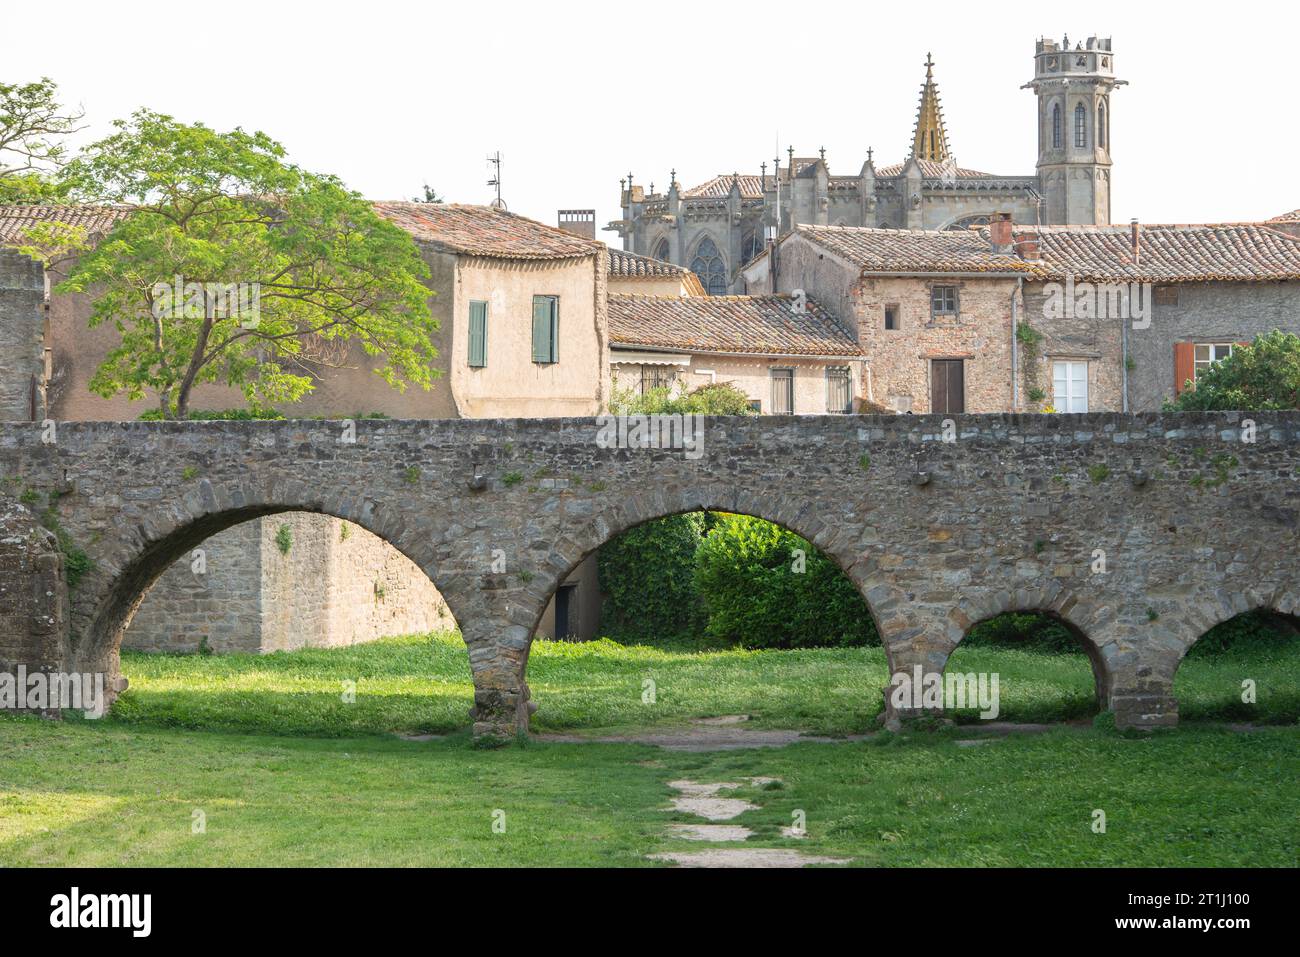 Carcassonne est une ville fortifiée française située dans le département de l'Aude, région Occitanie. Banque D'Images